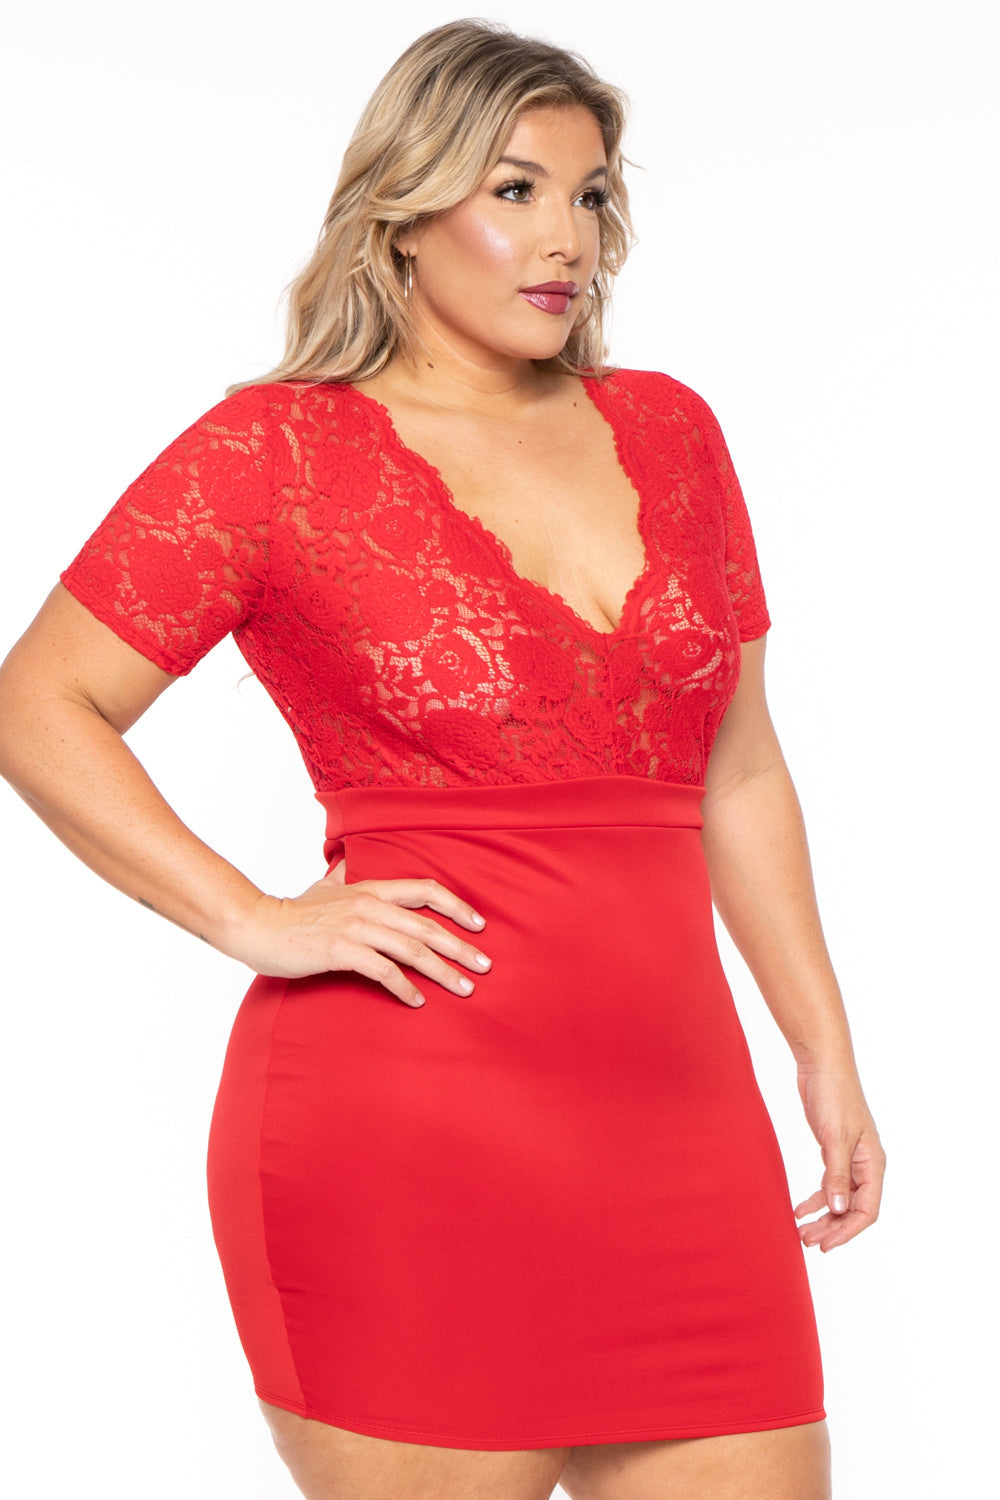 Curvy Sense Dresses Plus Size Lace Top Dress - Red